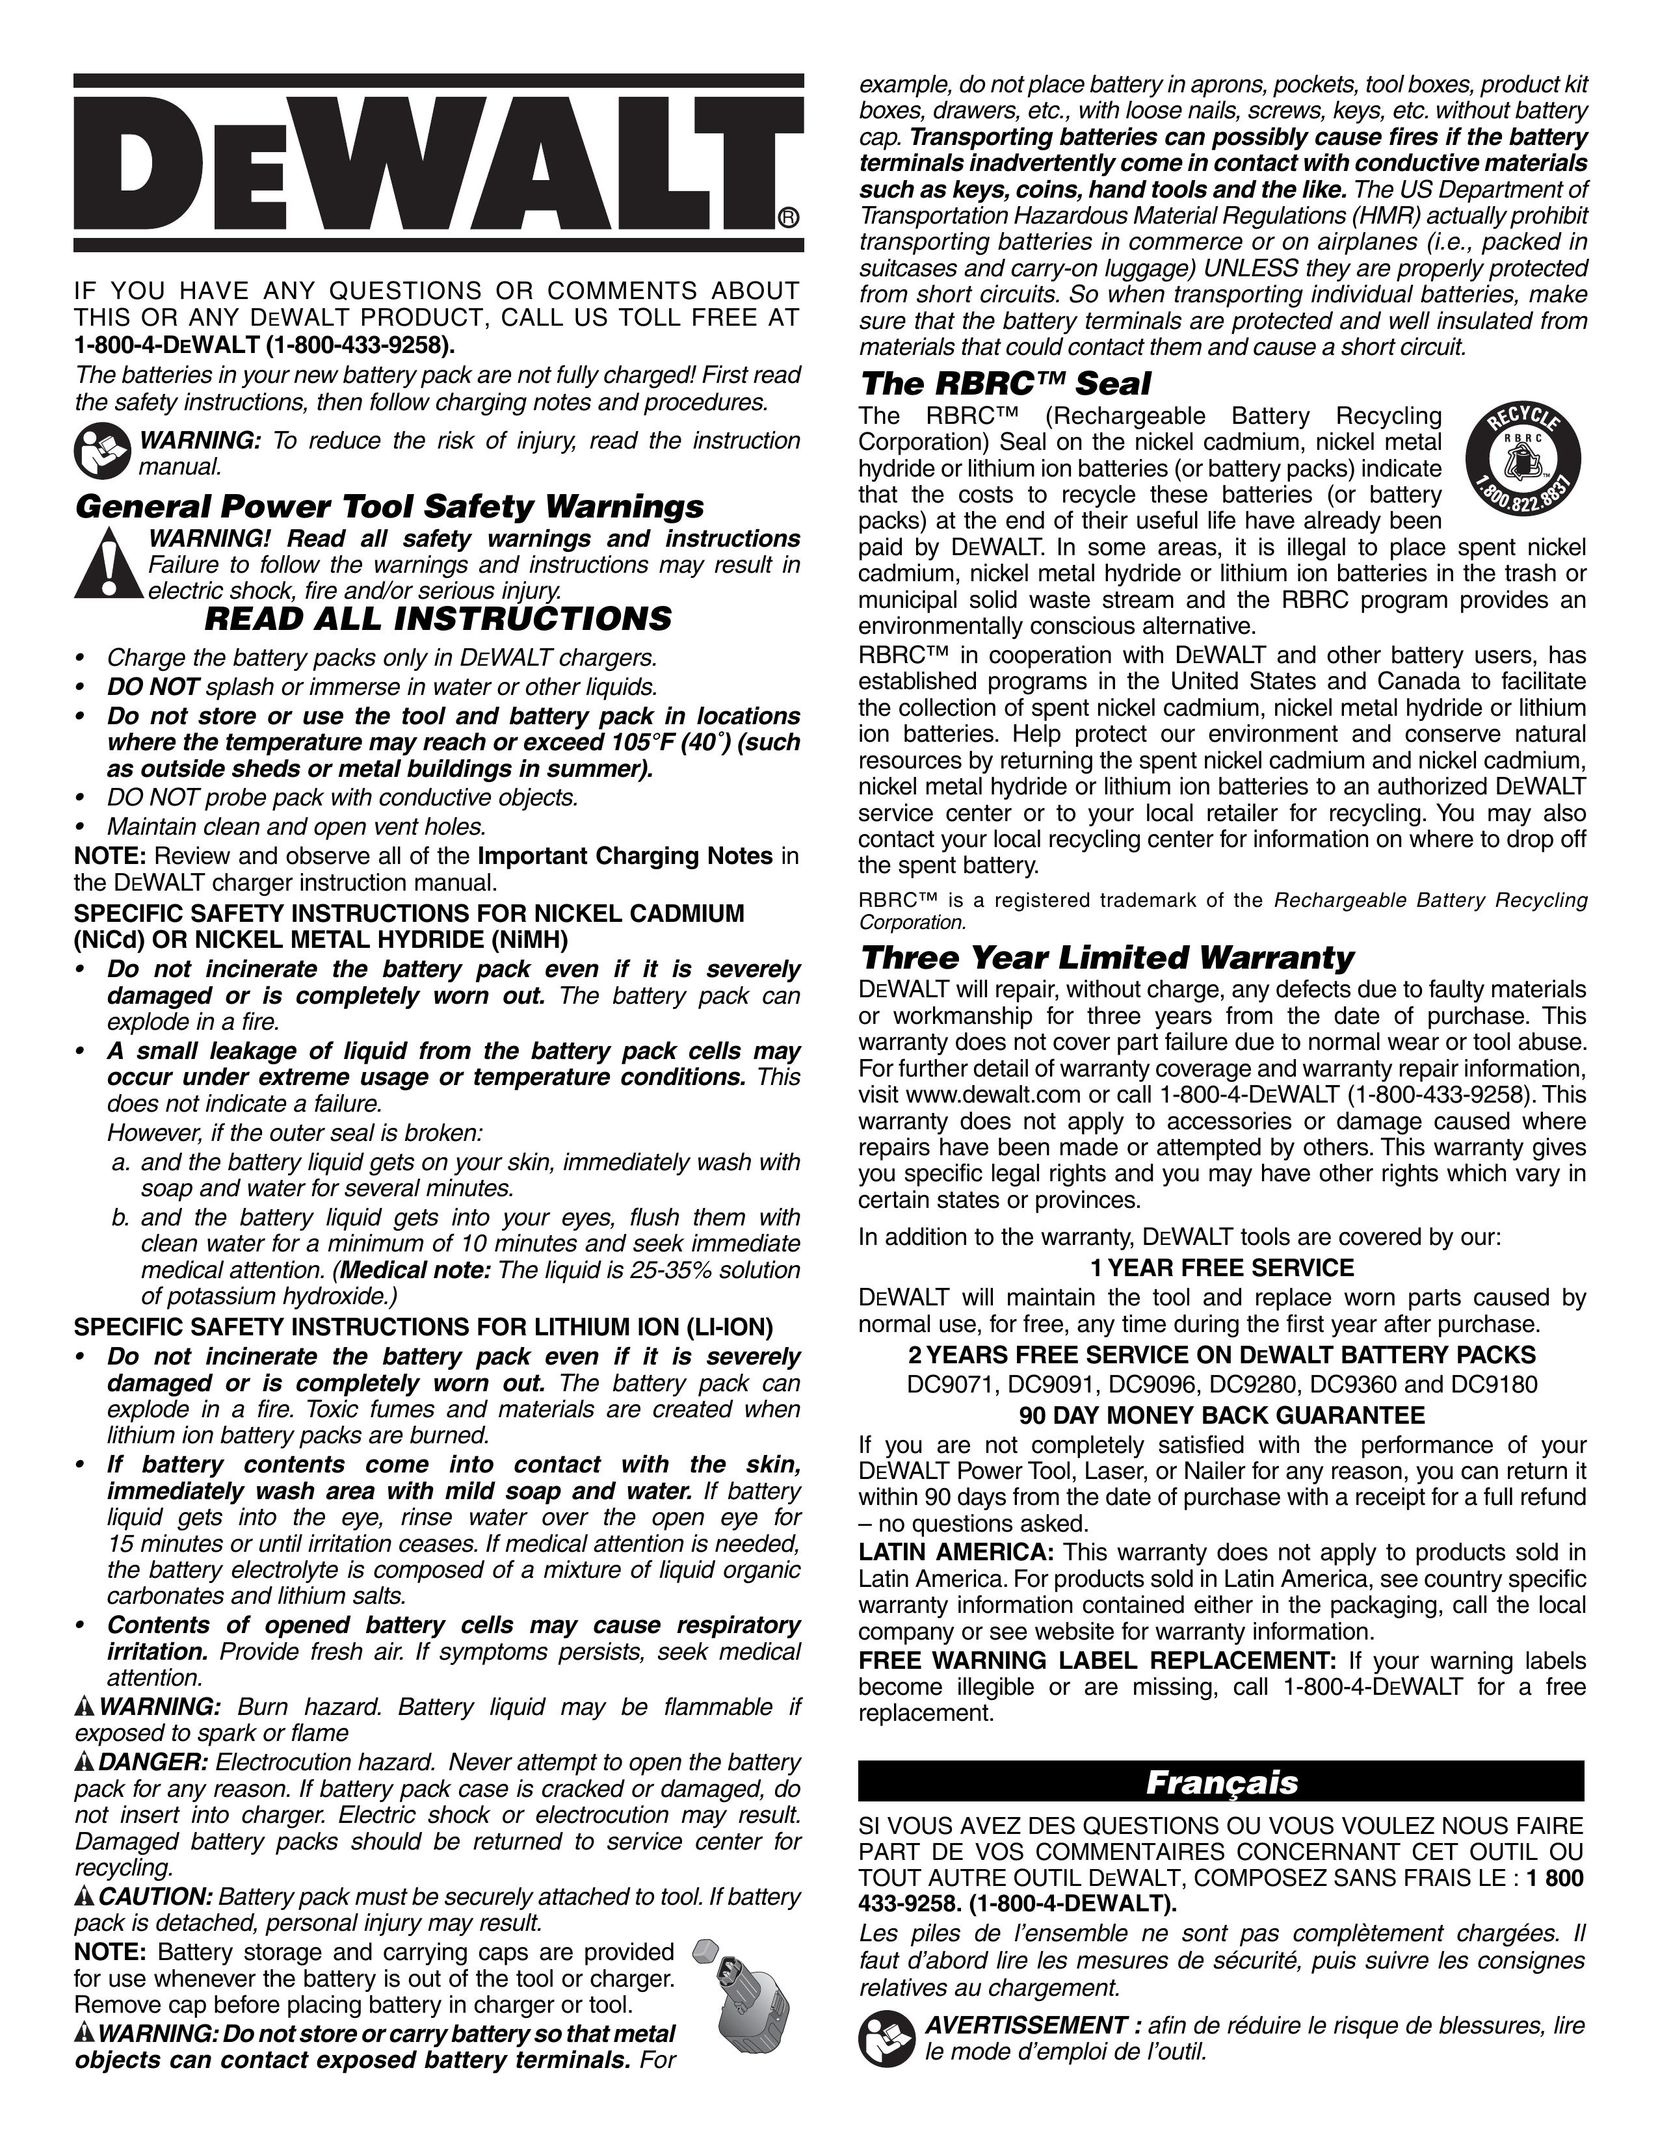 DeWalt DC9094 Battery Charger User Manual